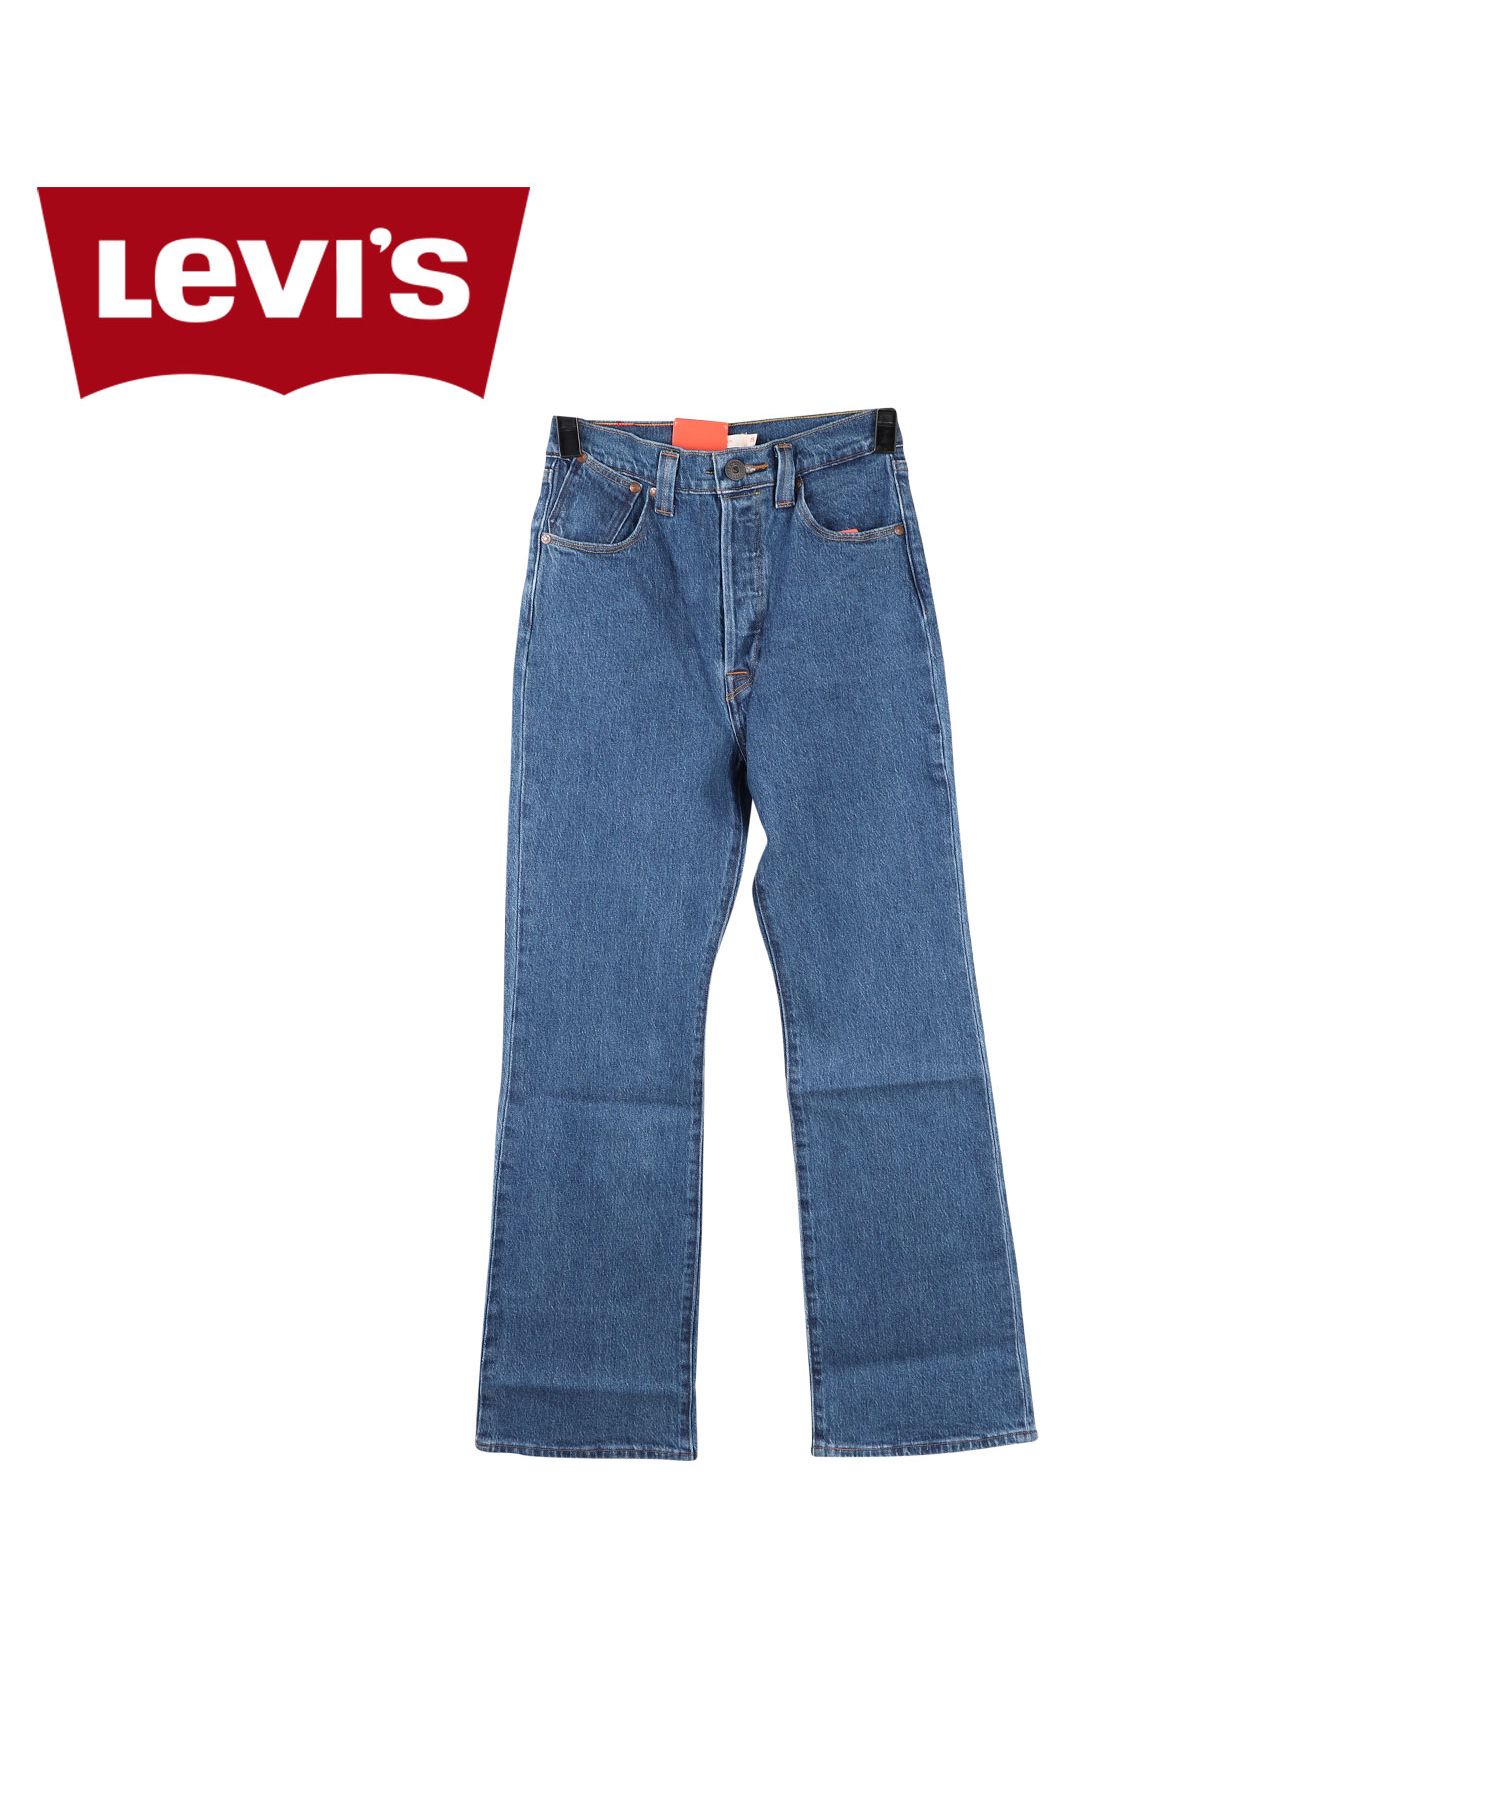 リーバイス(Levis) リーバイス レッド(Levis RED) ファッション | 通販 